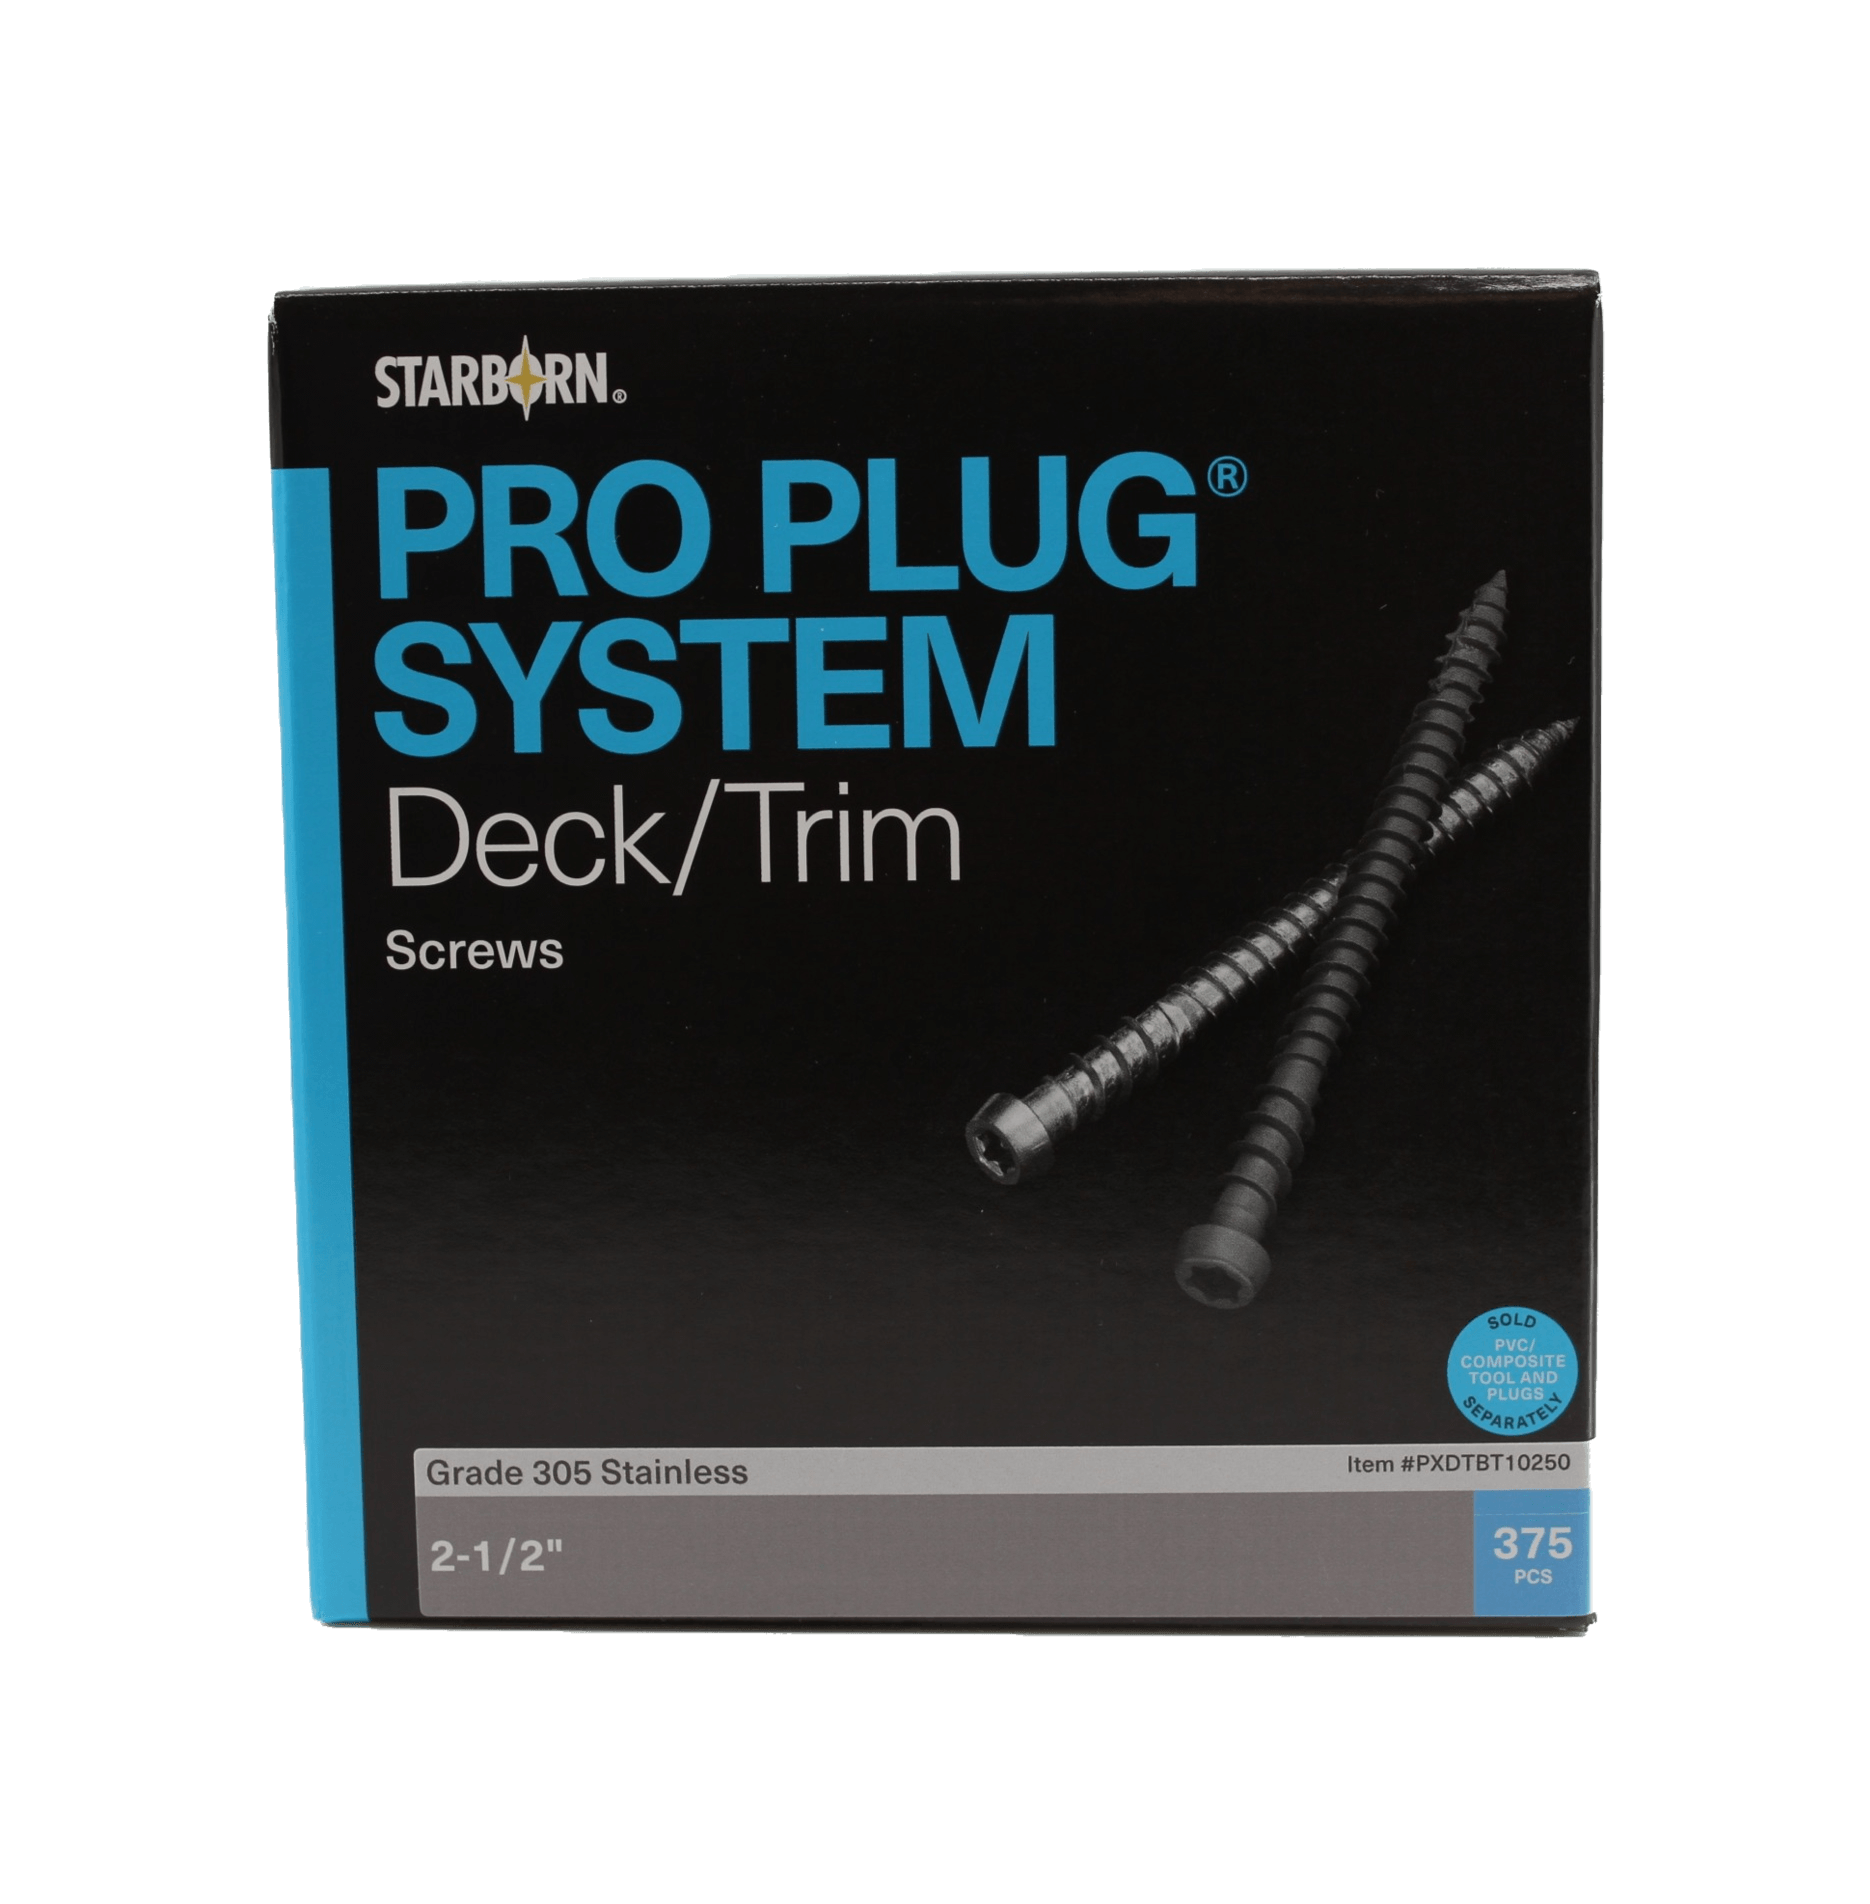 Pro Plug Screws for composite decking